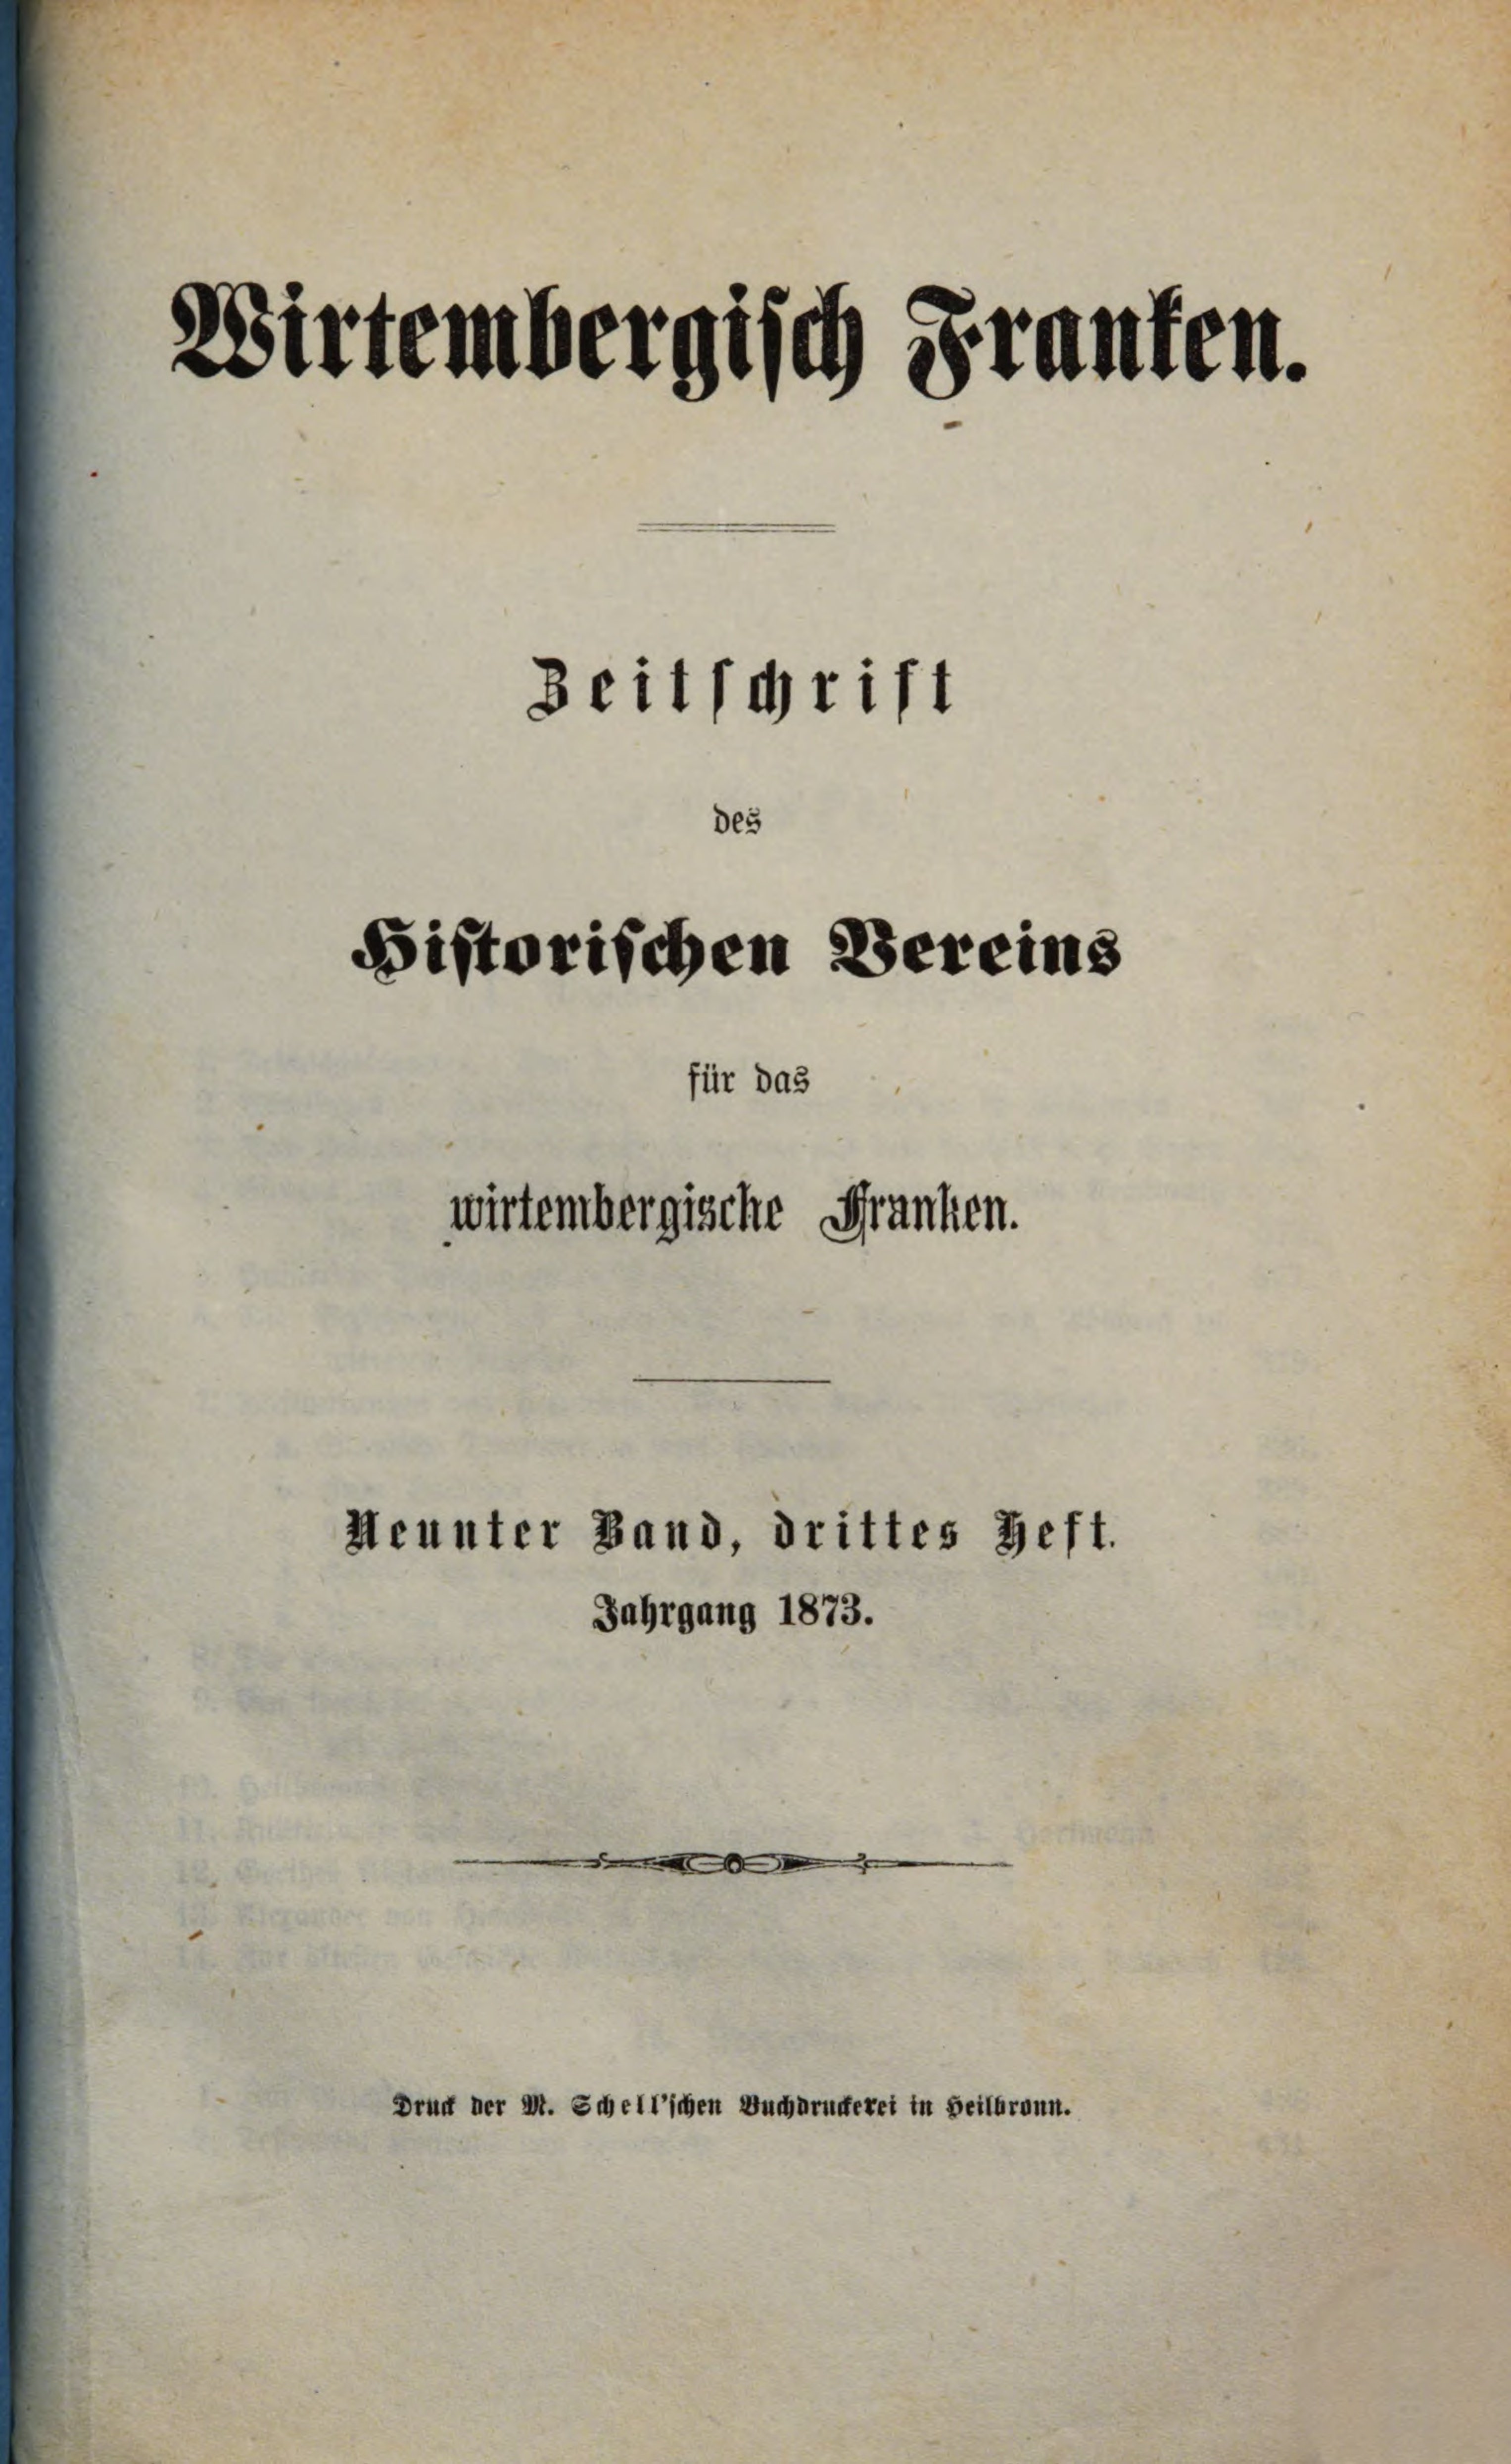 Titelbild der Zeitschrift des Historischen Vereins für das Württembergische Franken, Band 9, Nummer 3, 1873